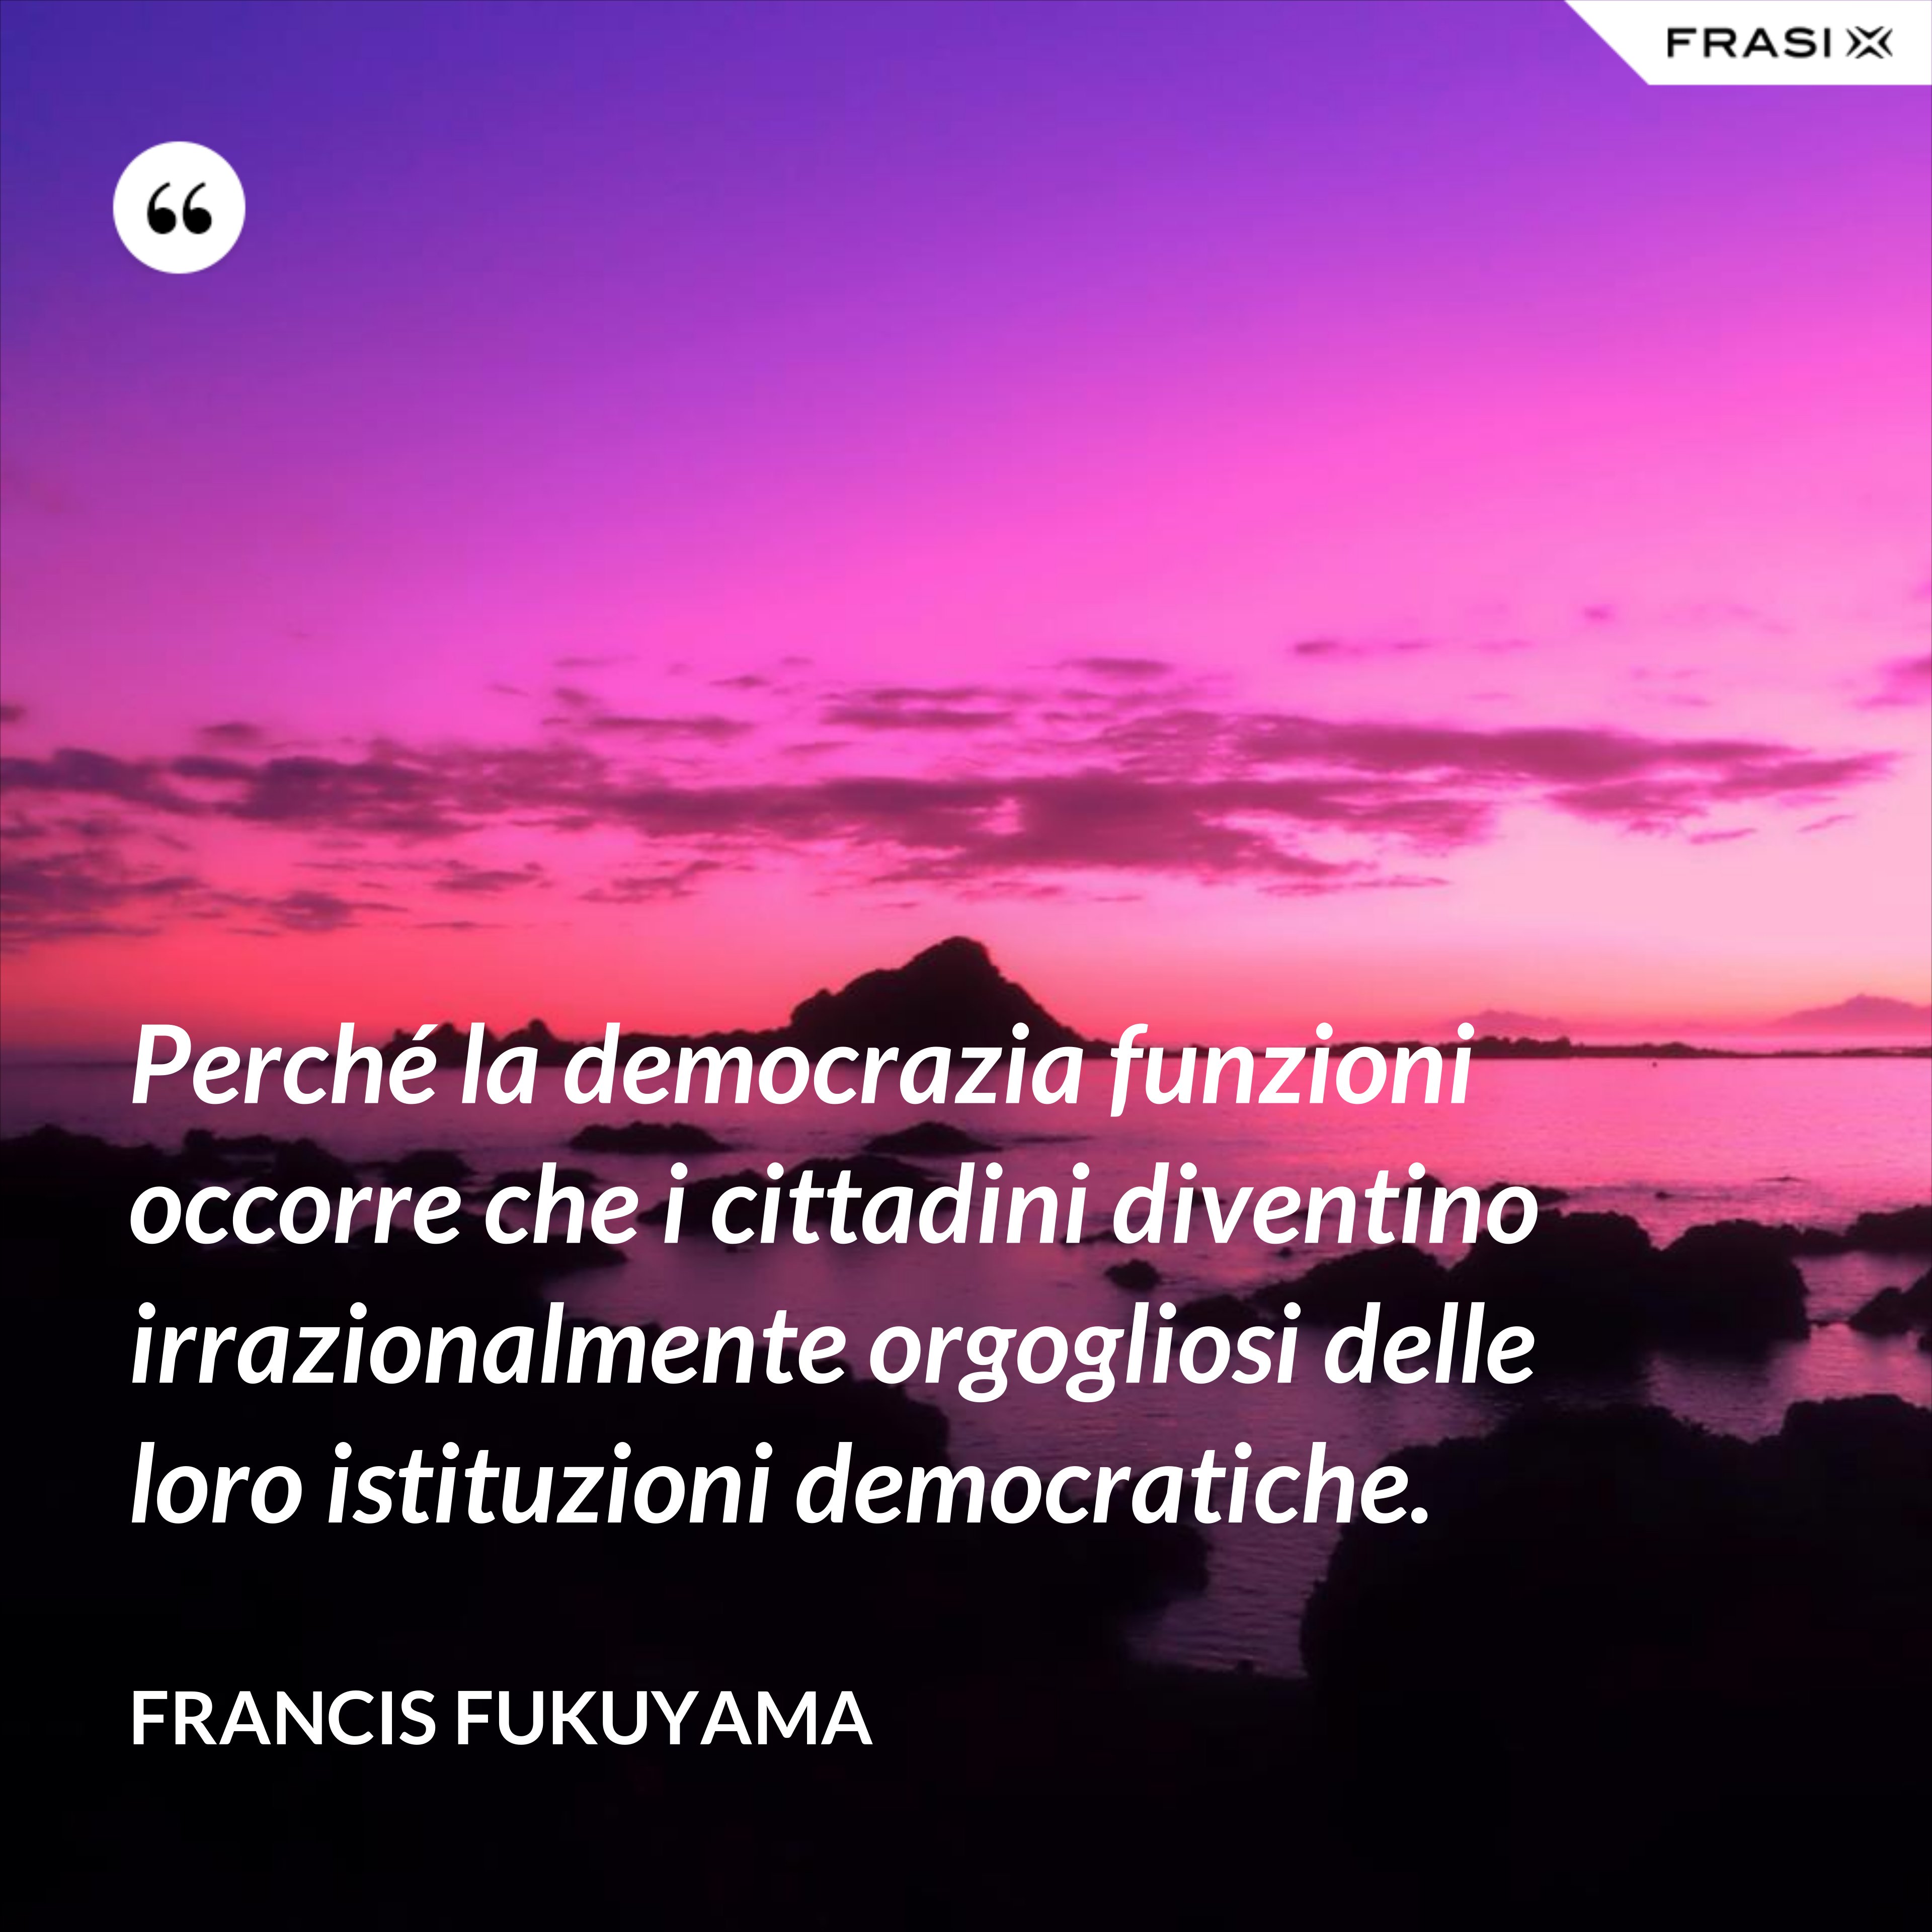 Perché la democrazia funzioni occorre che i cittadini diventino irrazionalmente orgogliosi delle loro istituzioni democratiche. - Francis Fukuyama